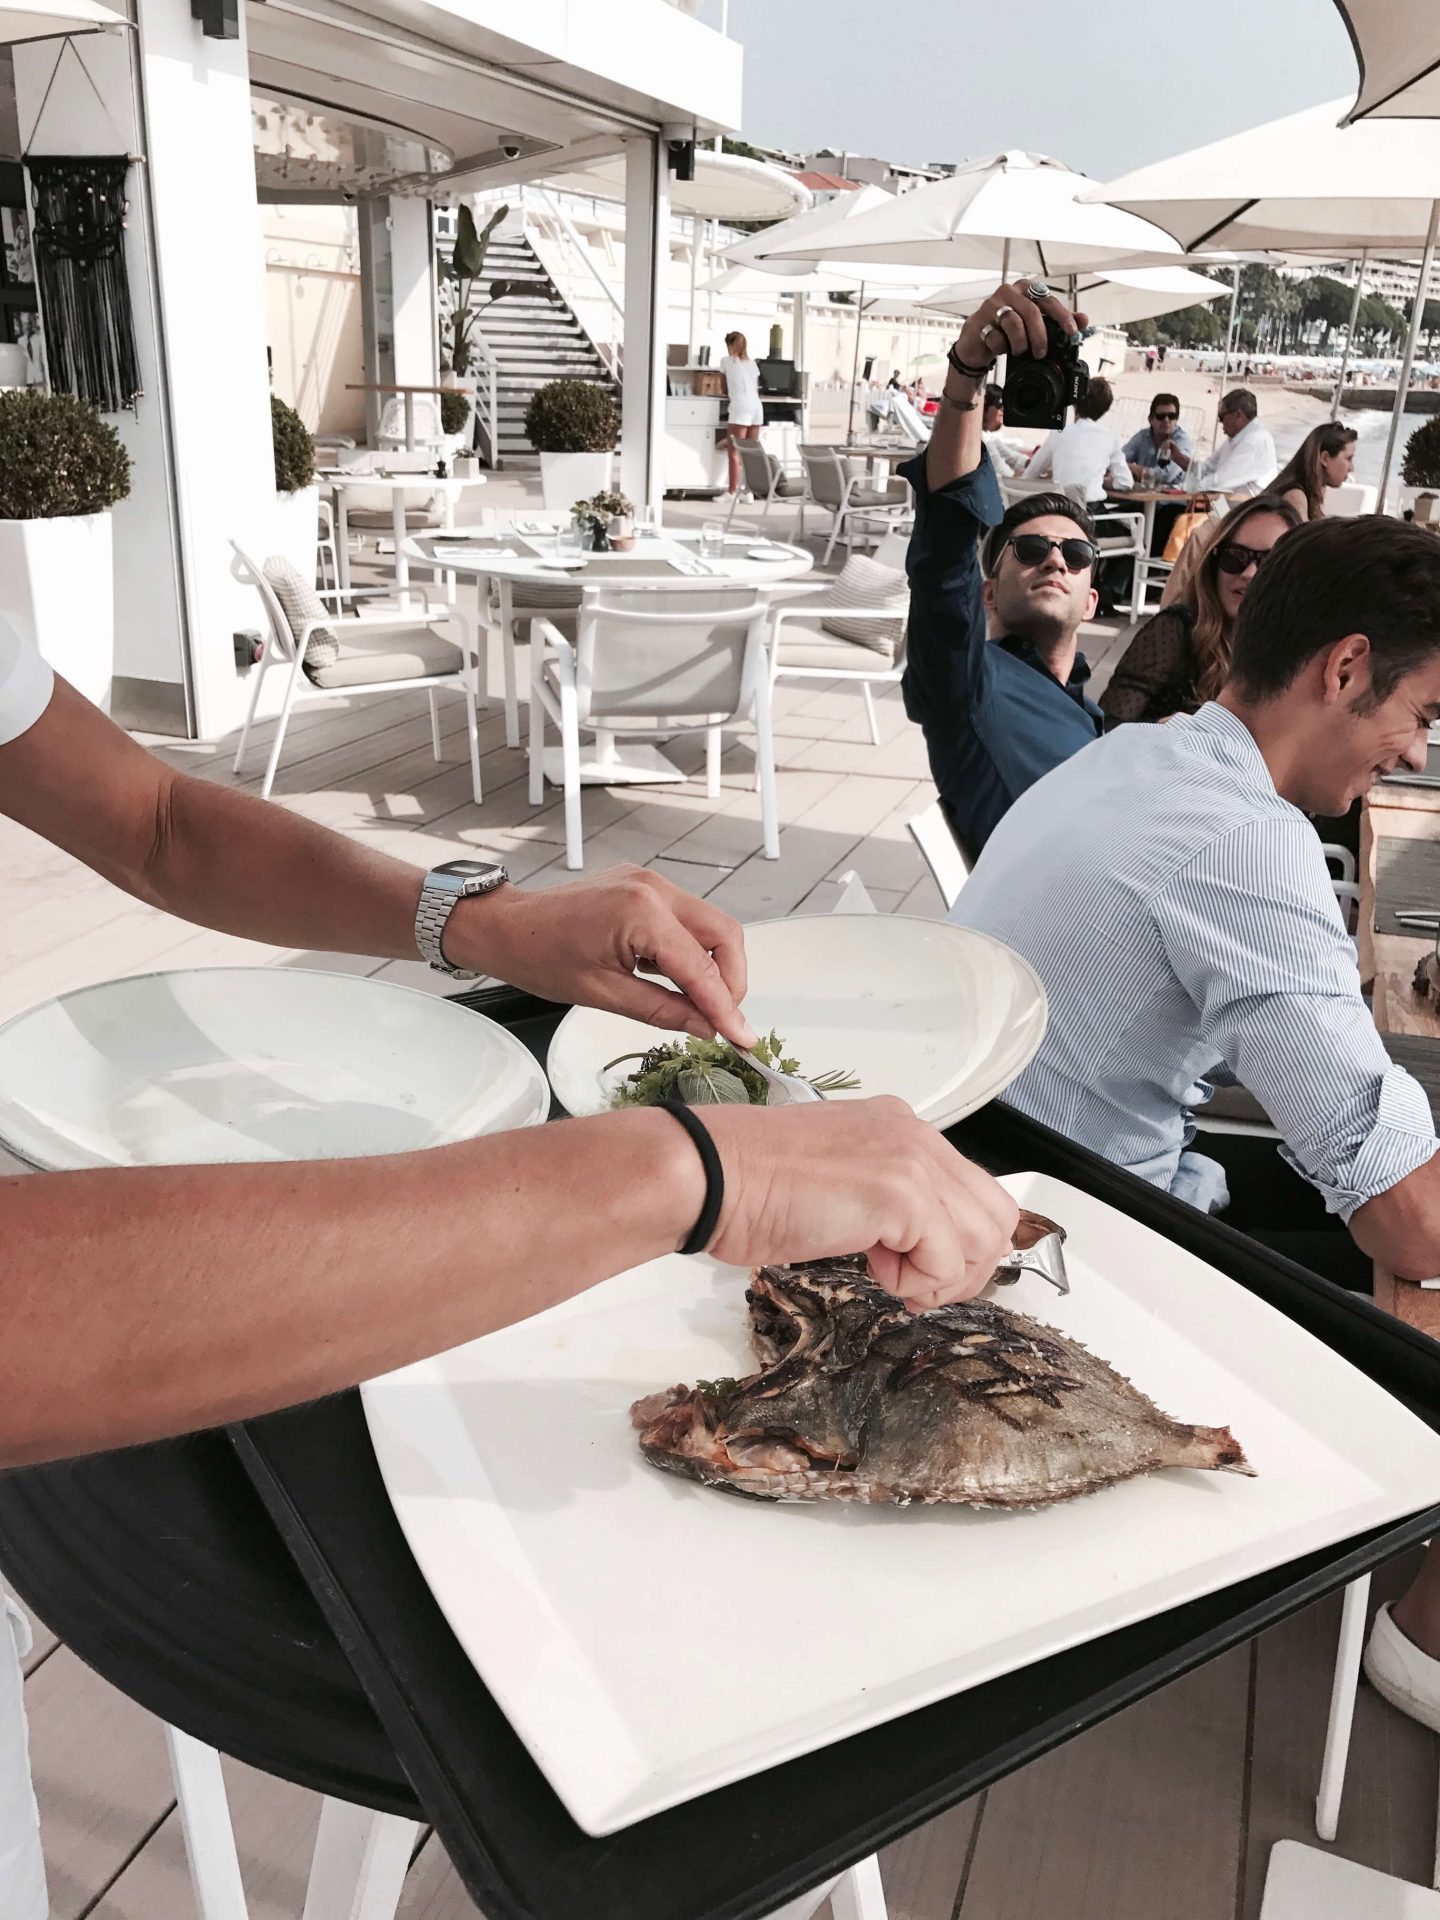 Cannes hôtel Majestic Barrière bonnes adresses restaurants L'atelier d'al blog mode lifestyle travel voyage